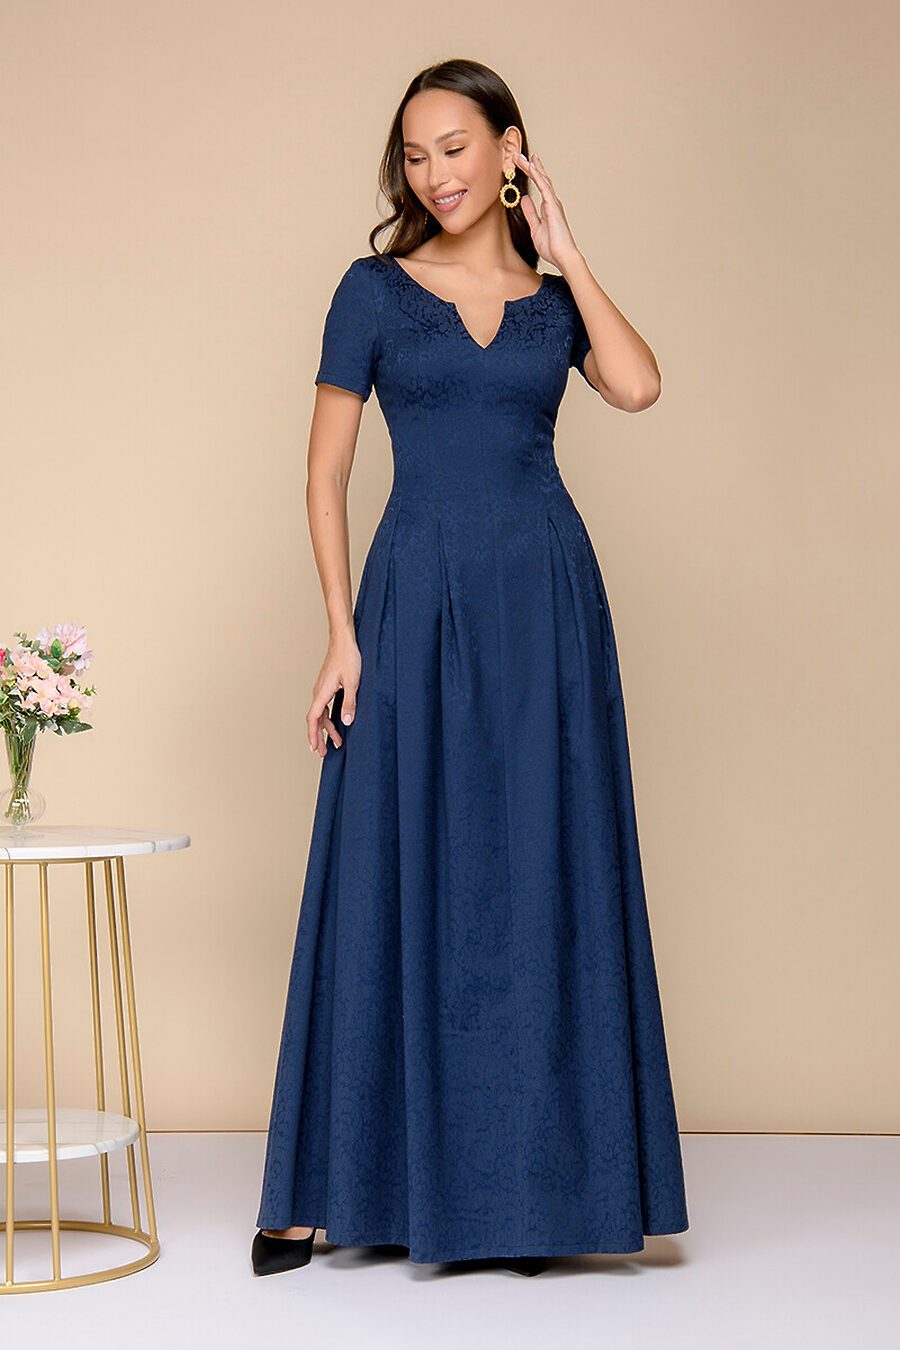 Платье для женщин 1001 DRESS 775889 купить оптом от производителя. Совместная покупка женской одежды в OptMoyo